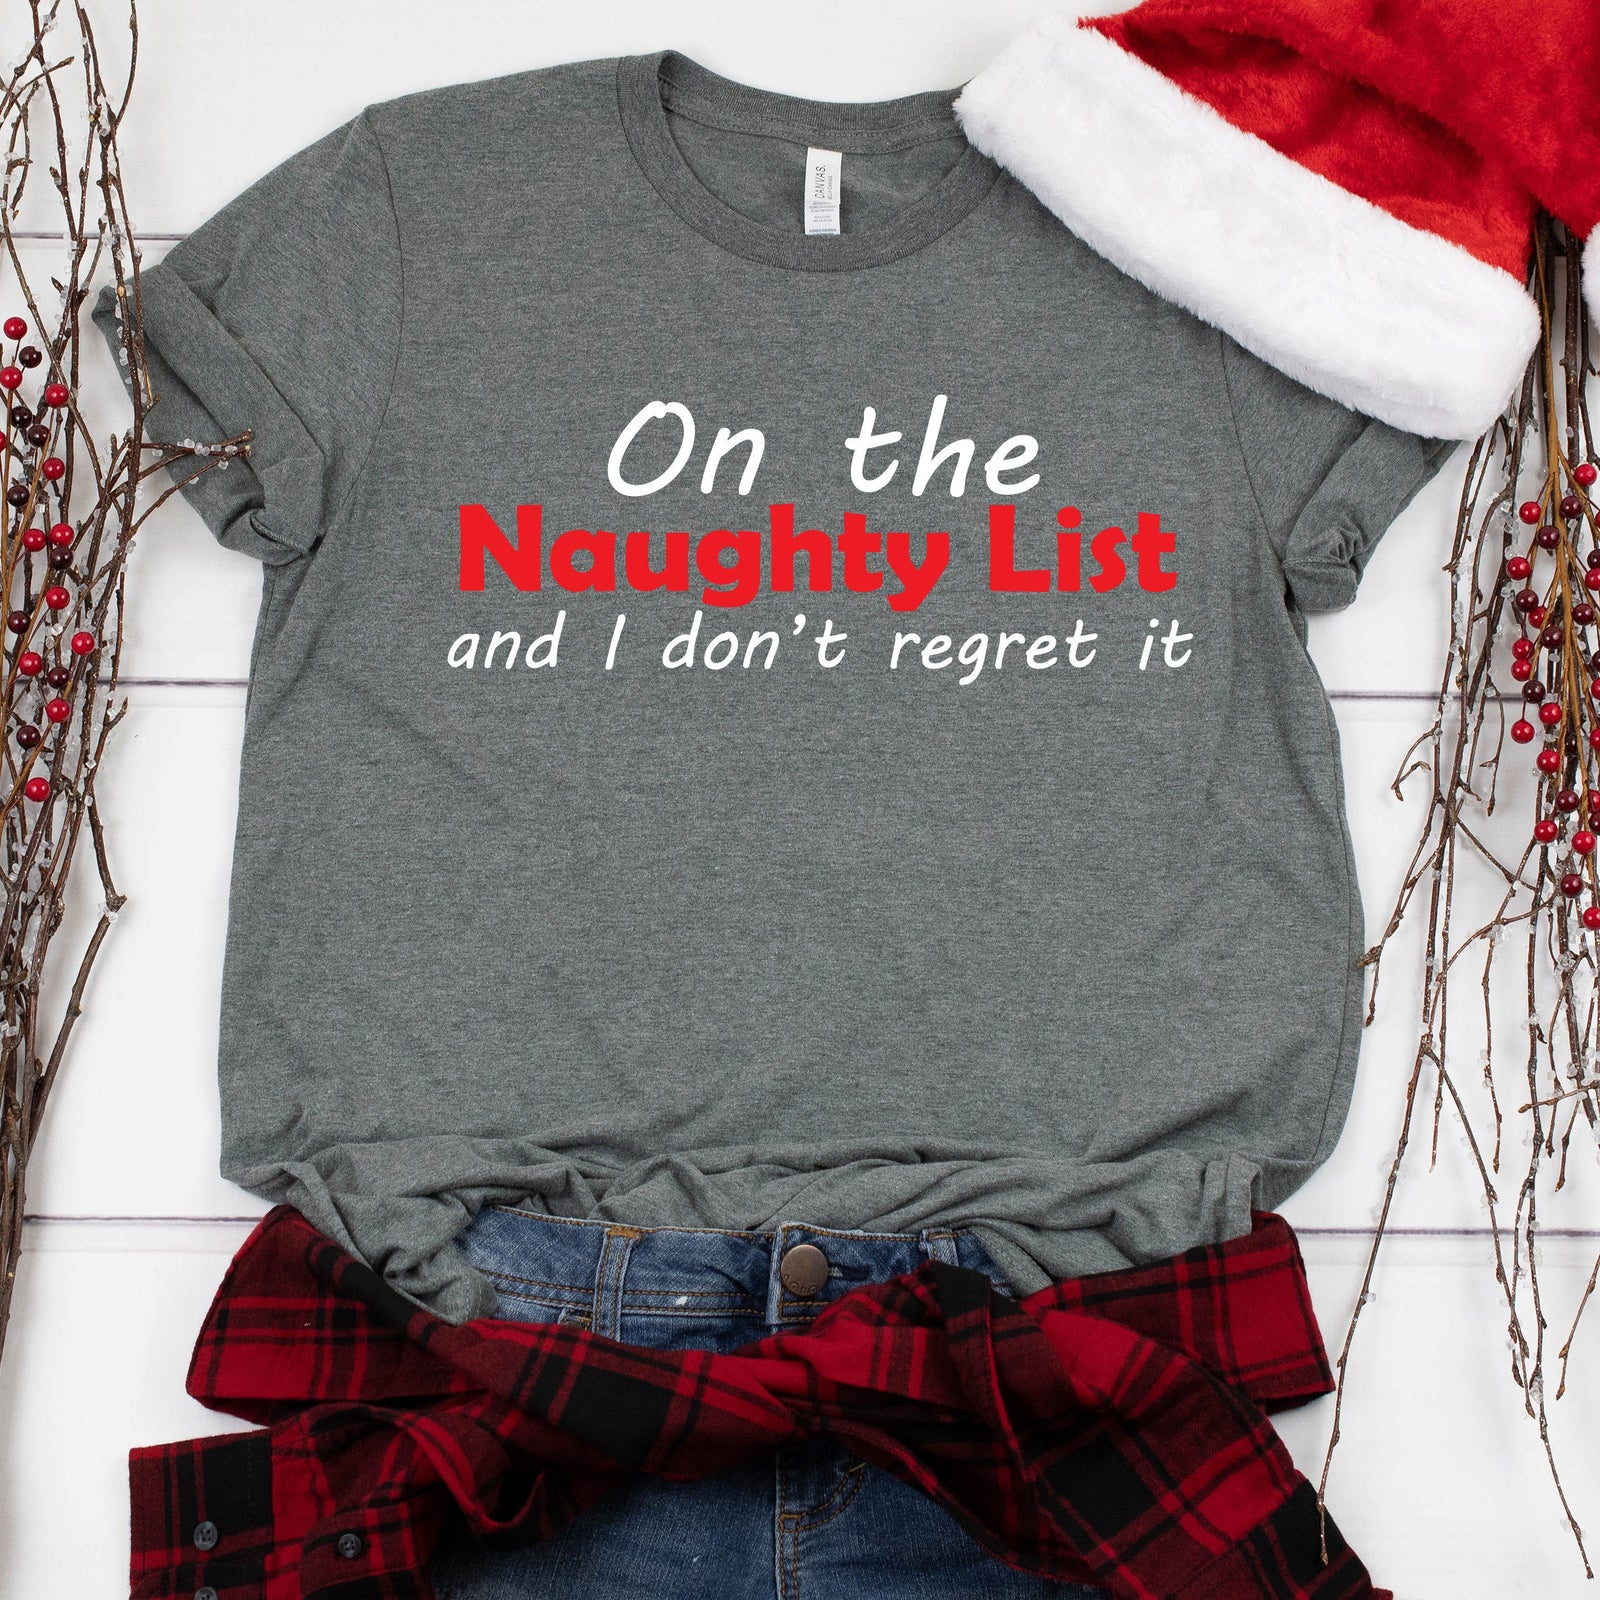 On the Naughty List Christmas T-Shirt - X-Mas T Shirt - Funny Holiday Shirt - Christmas Graphic Tee